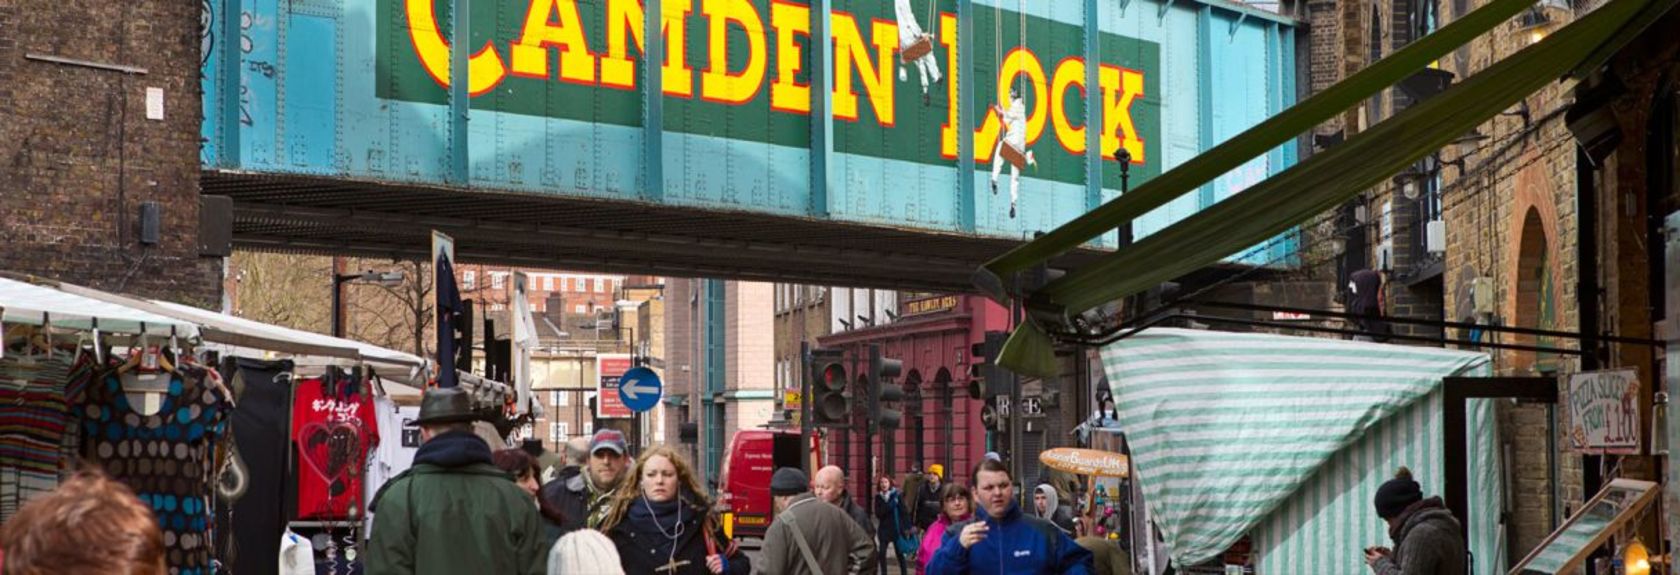 De todos os mercados da cidade de Londres, o Camden Market no bairro de Camden Town é de longe o mais popular. Todos os fins de semana cerca de 100.000 visitantes visitam diariamente os mercados do distrito, o que corresponde a aproximadamente 25 milhões de visitantes por ano. Isso torna o Camden Market uma das maiores atrações de toda Londres.